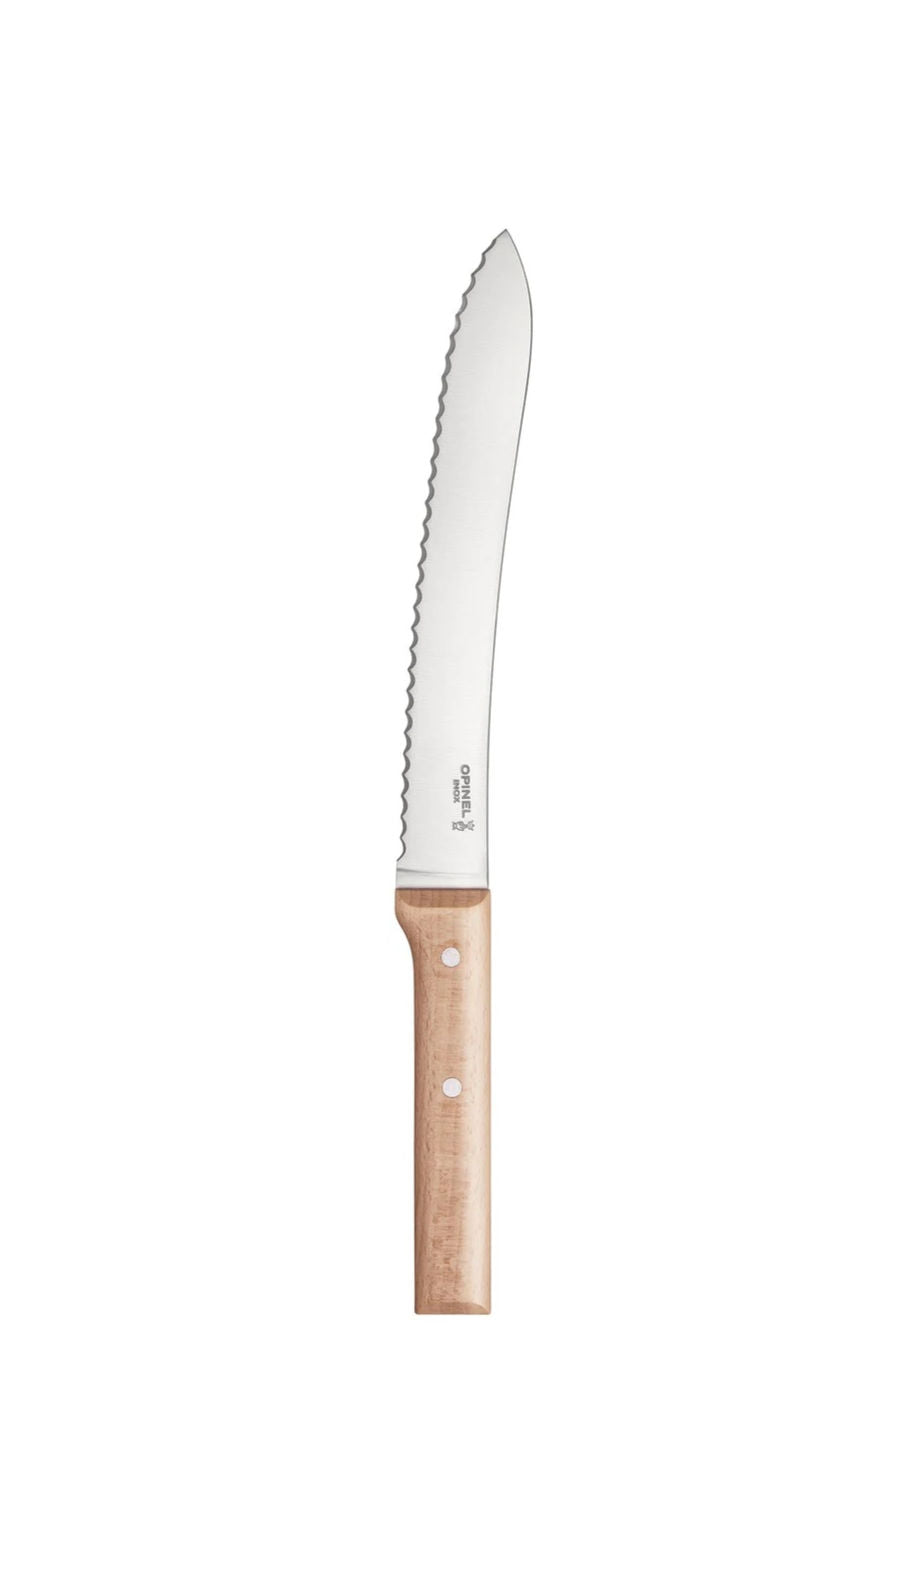 Opinel Serrated Bread Knife